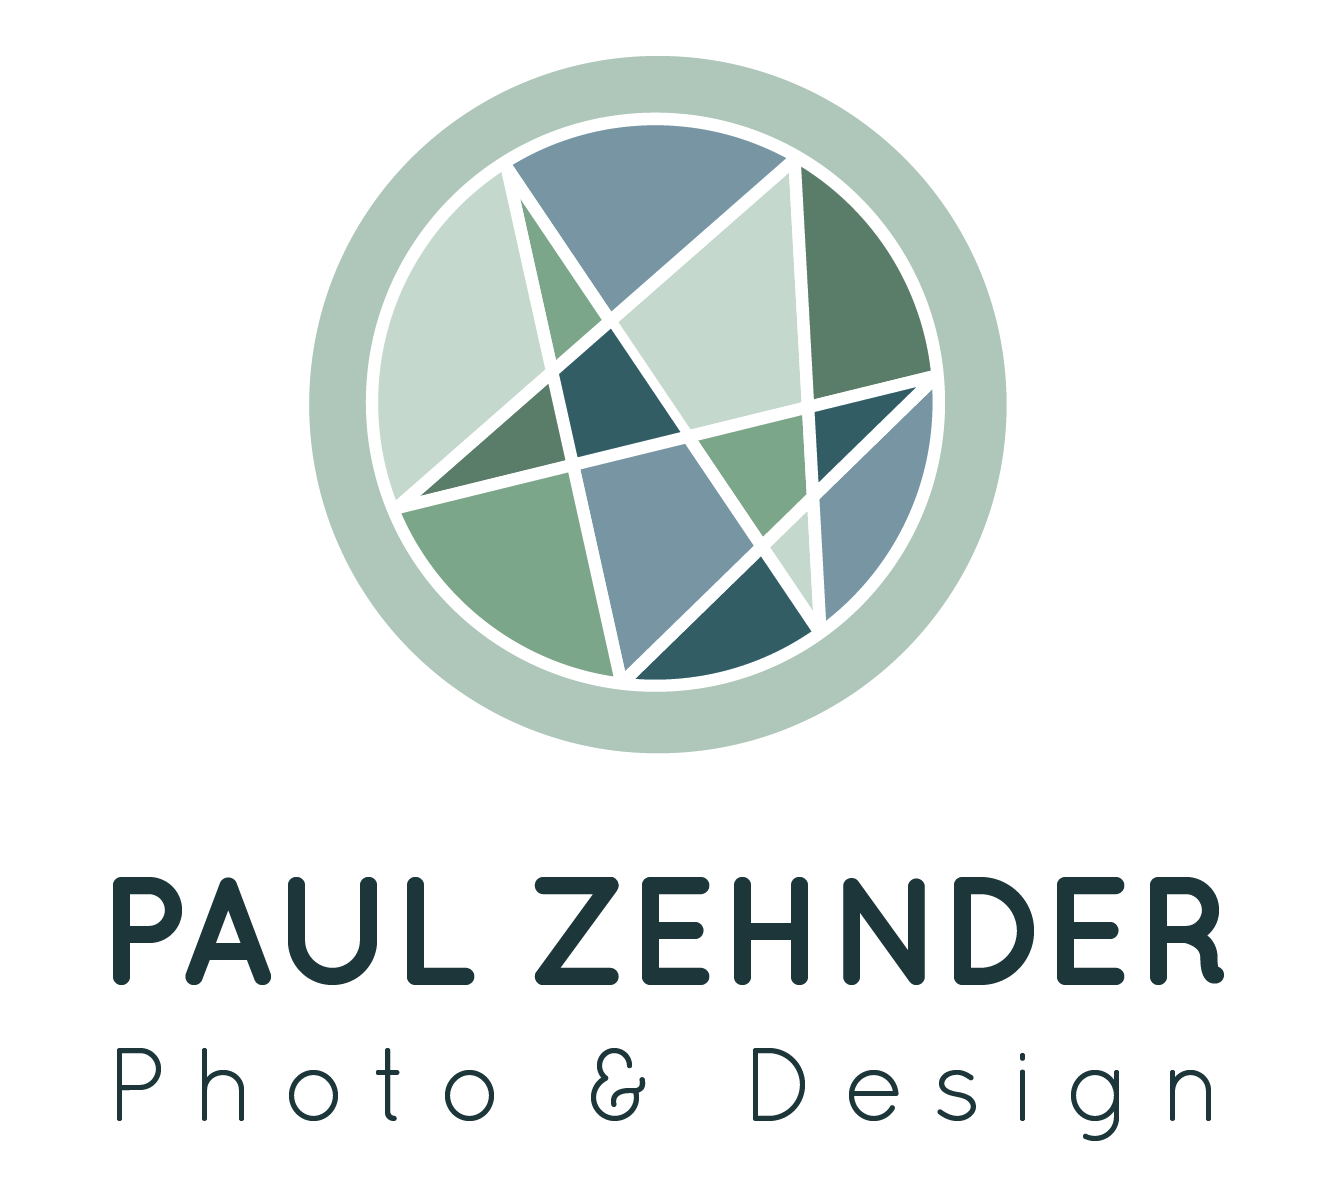 Paul Zehnder